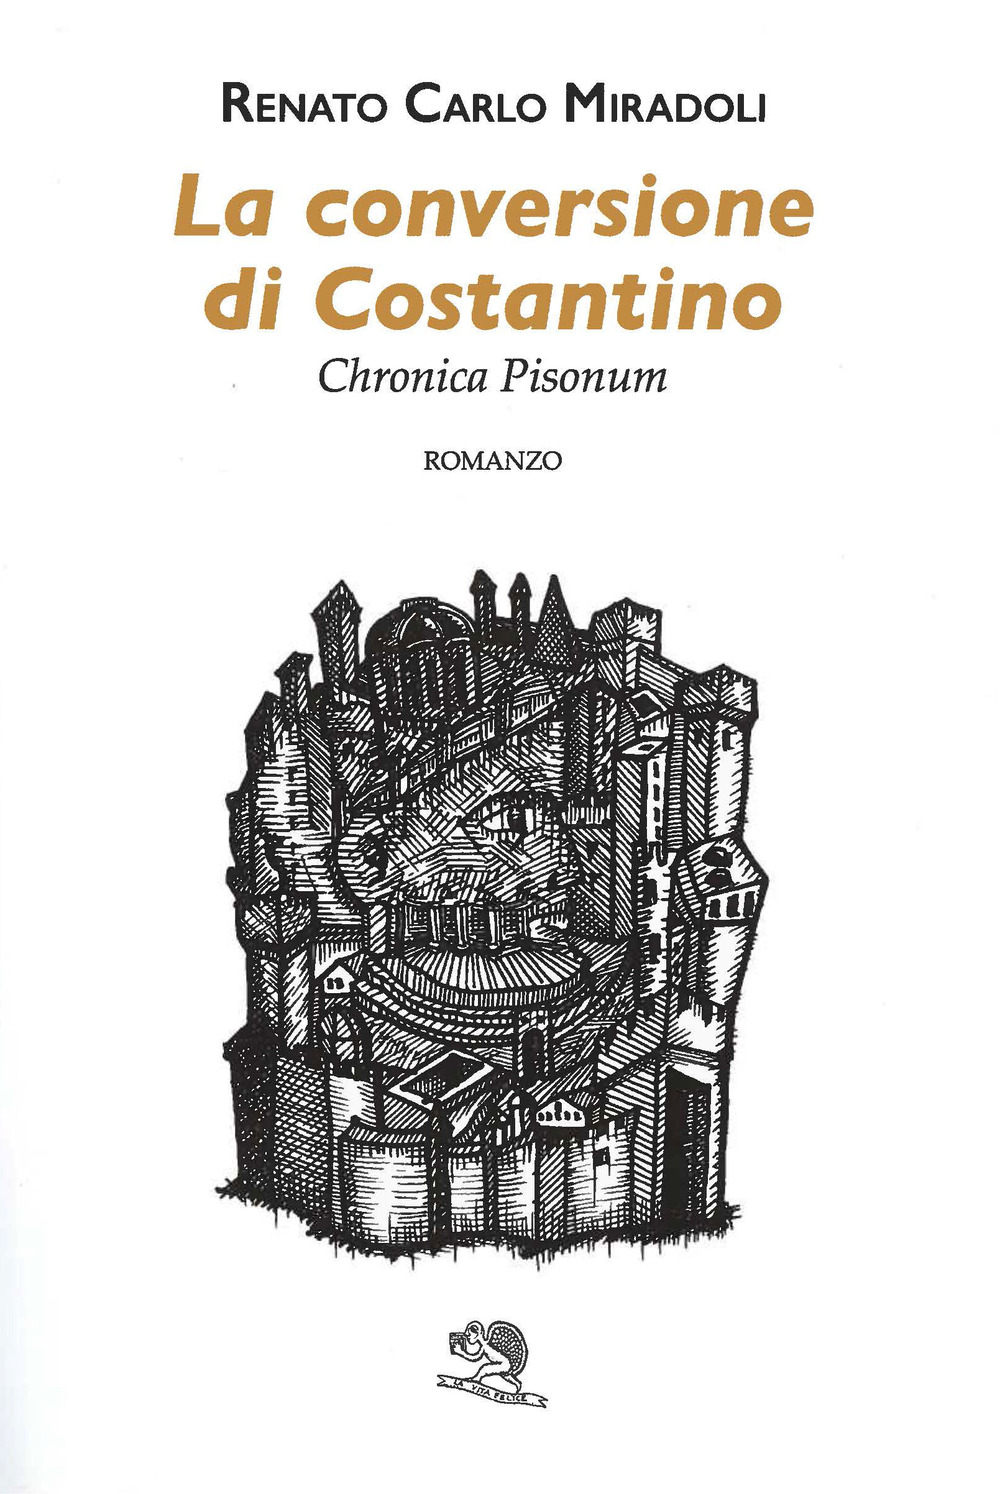 La conversione di Costantino. Chronica Pisonum